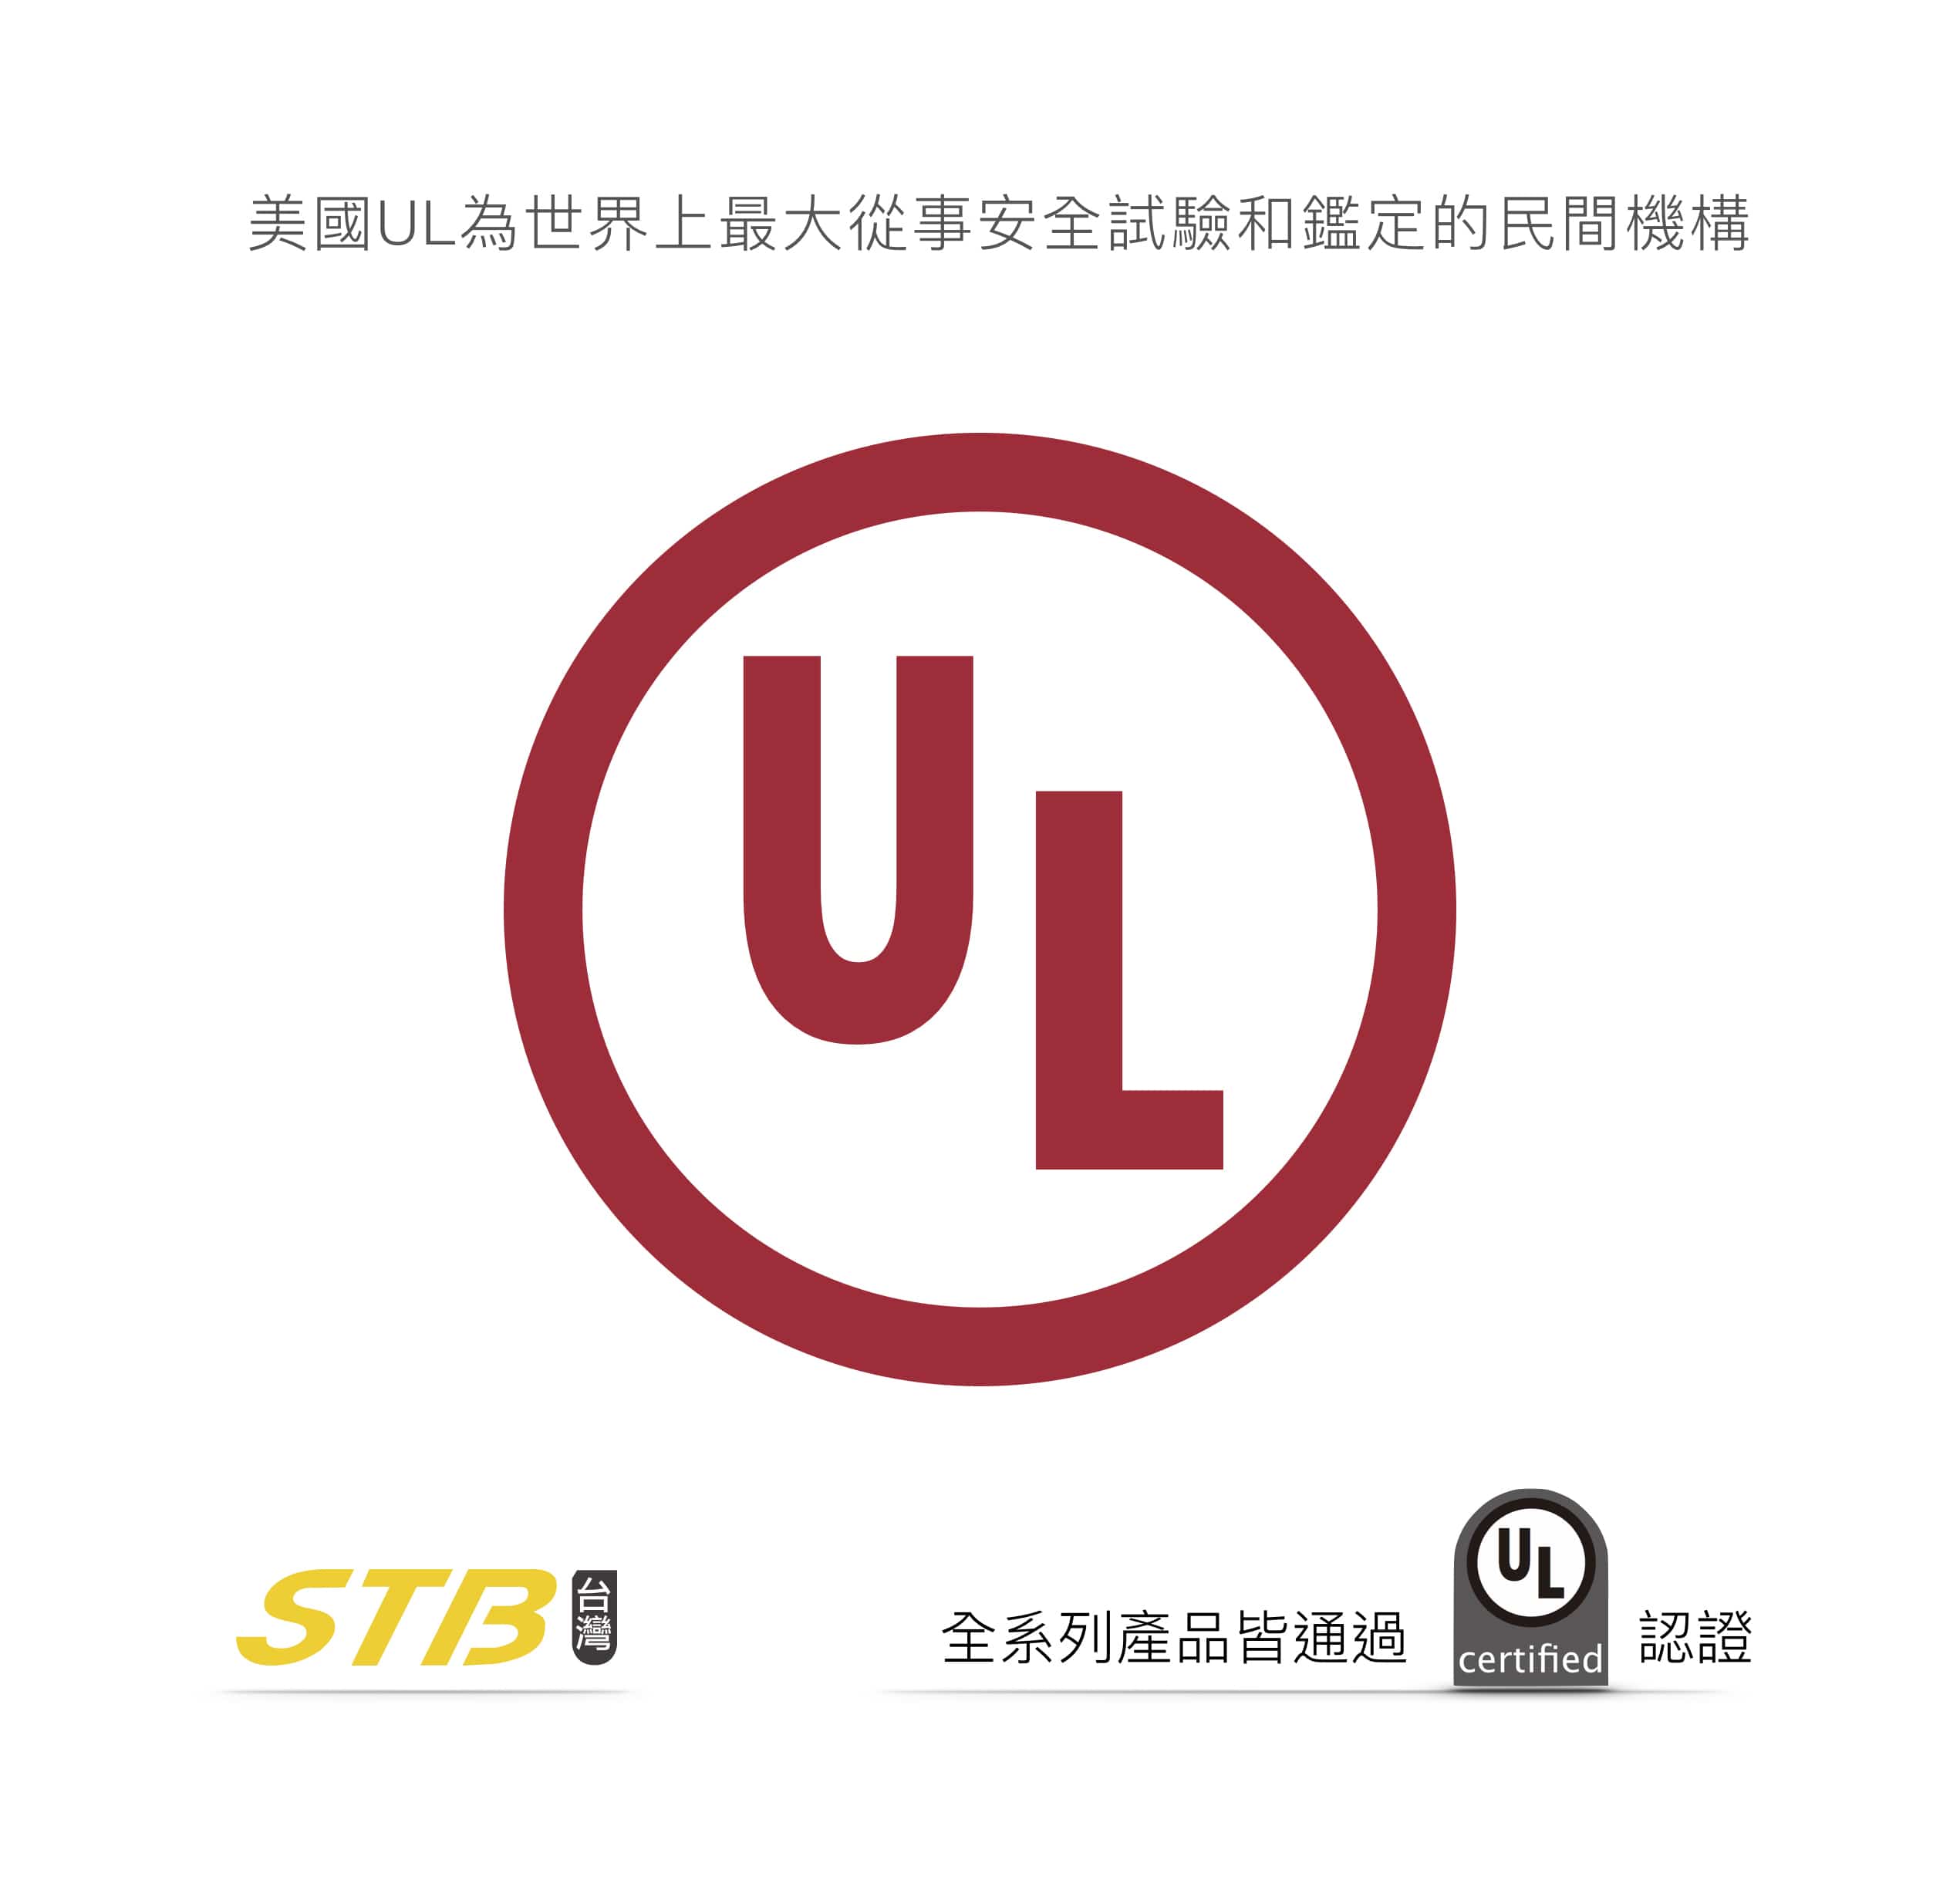 美國UL為世界上最大從事安全試驗和鑑定的民間機構 STB全系列產品皆通過UL certified 認證